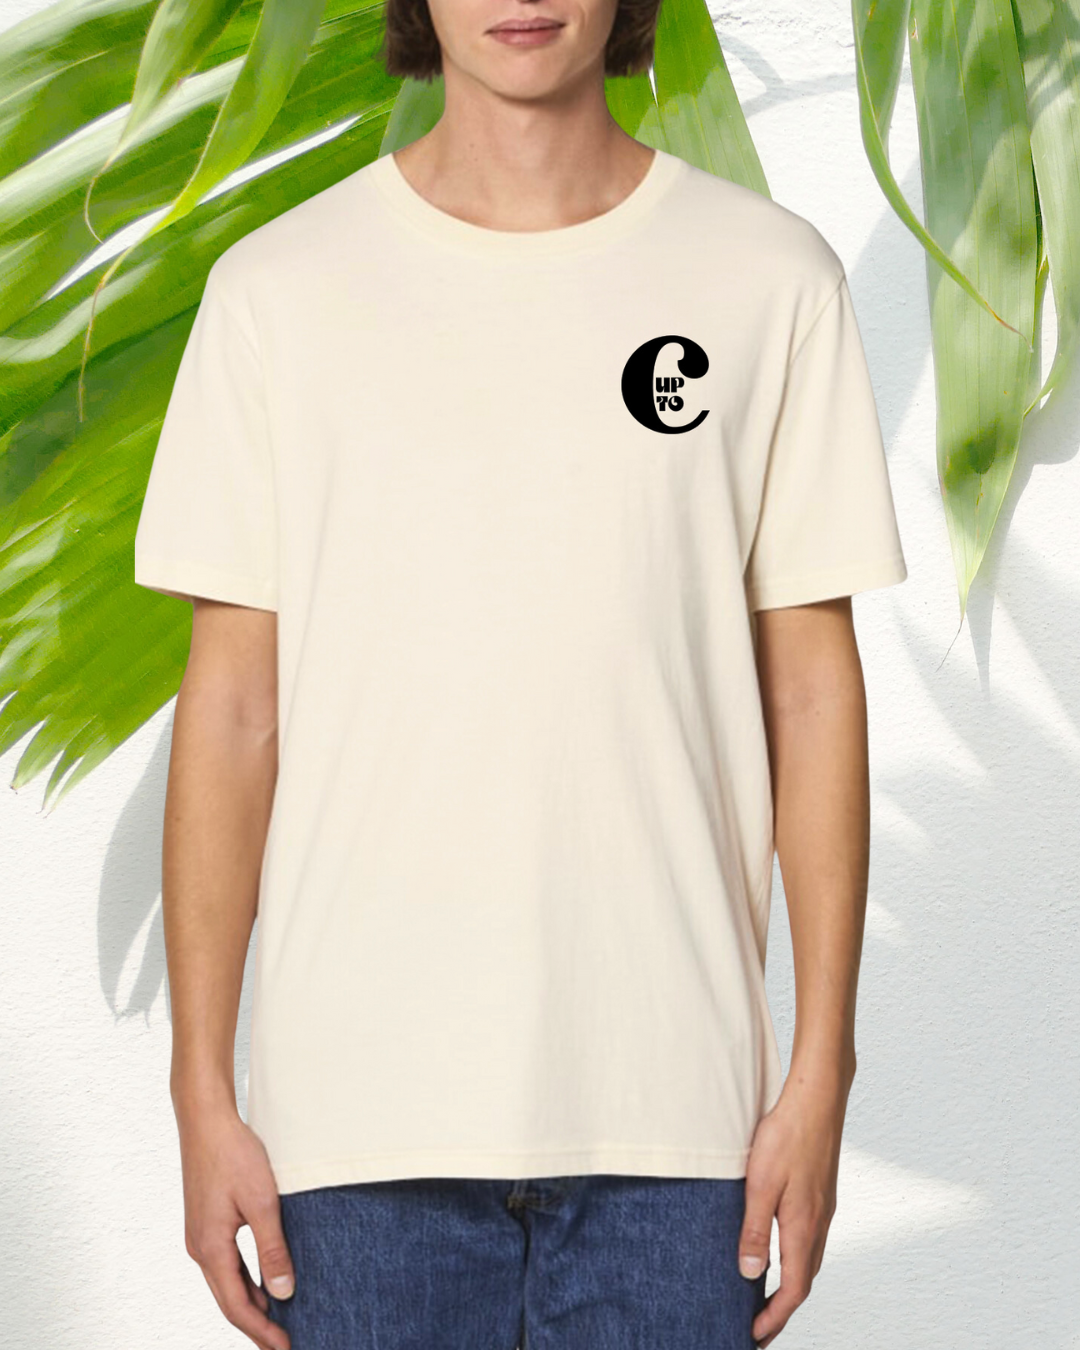 T-shirt Zen attitude Up to C NO autrement